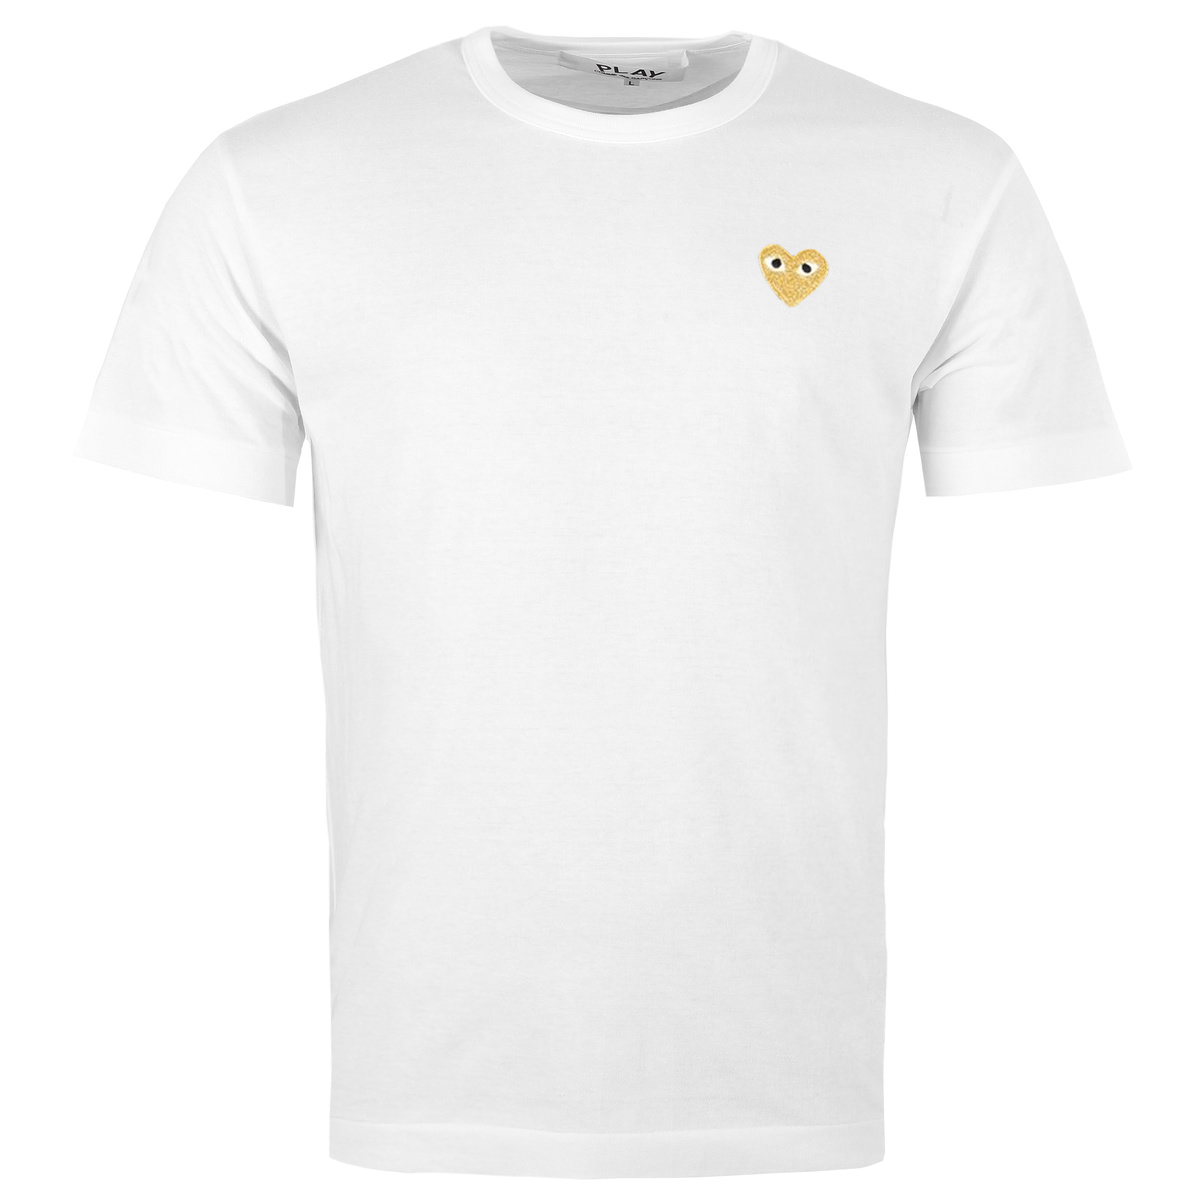 T216 Gold Heart T-shirt White M White